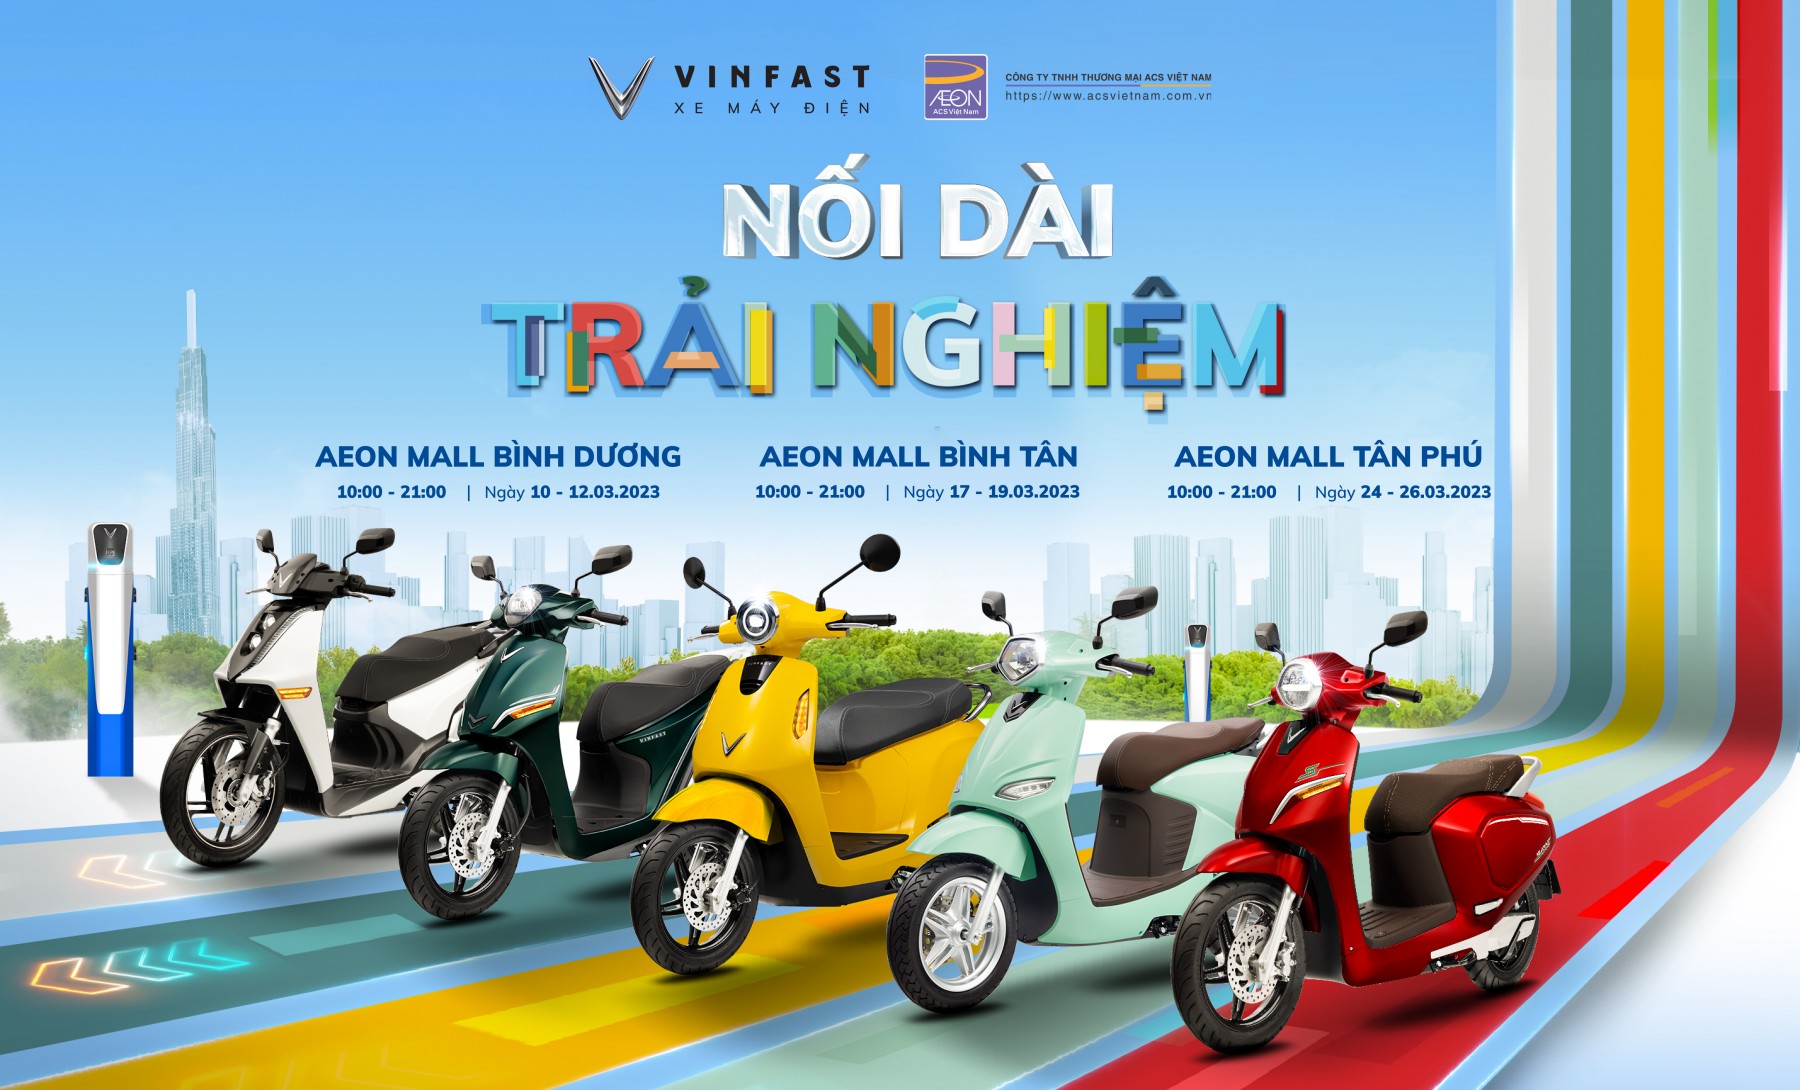 Cuối tuần “đi mall”, săn voucher mua xe máy điện VinFast - Ảnh 1.